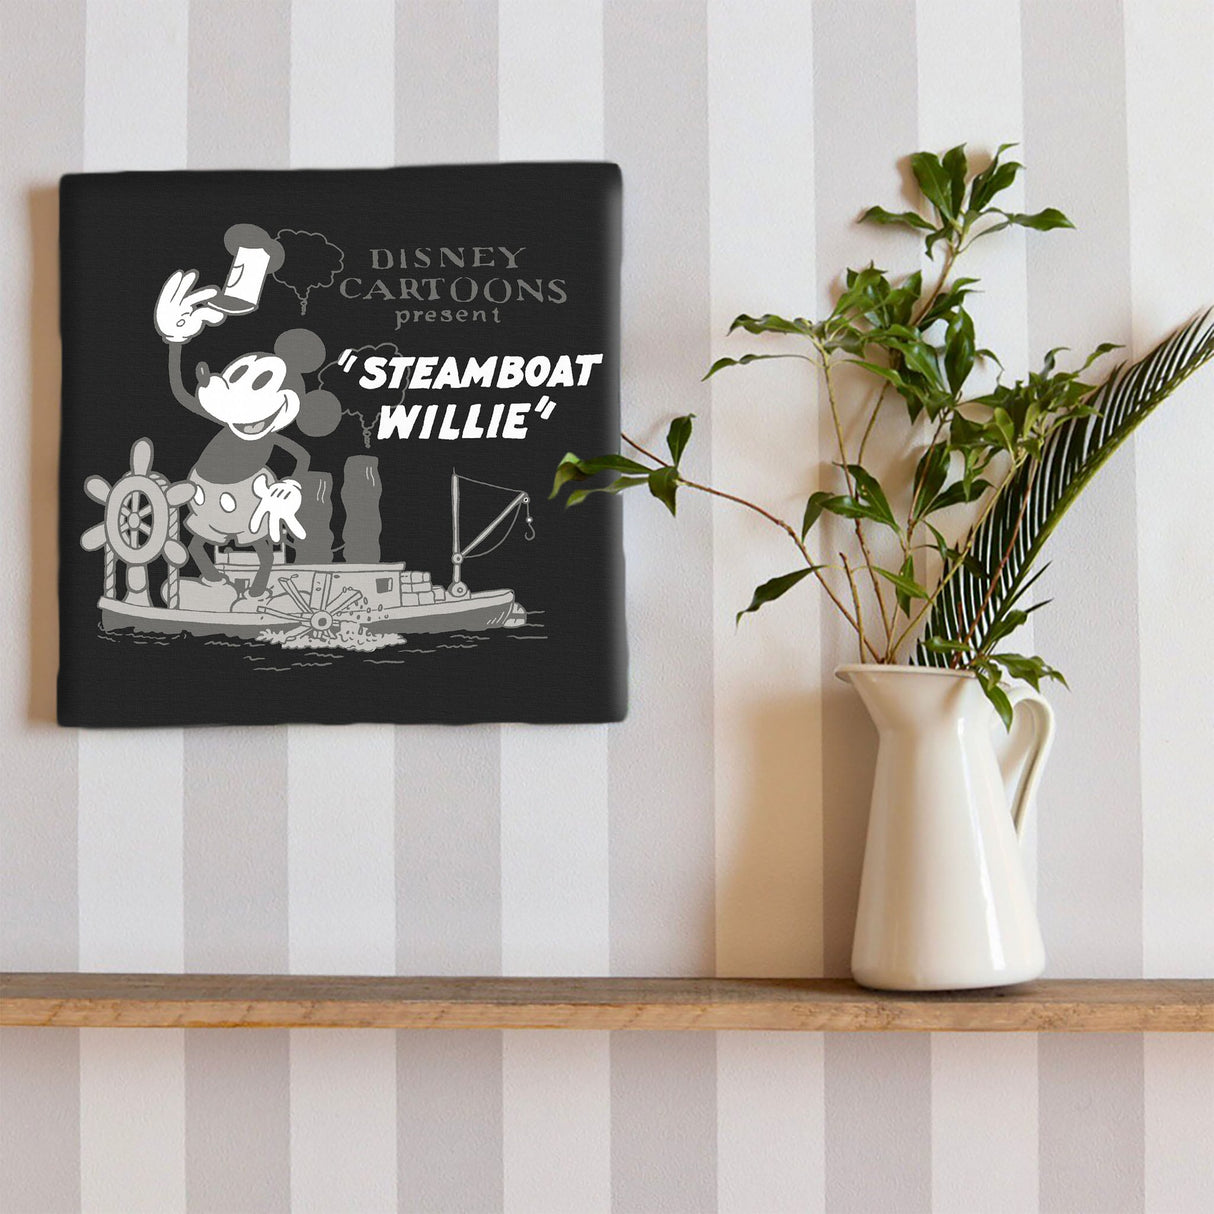 ミッキーマウスのファブリックパネル インテリア雑貨 アートパネル キャンバス ディズニー 蒸気船ウィリー dsny-2303-05